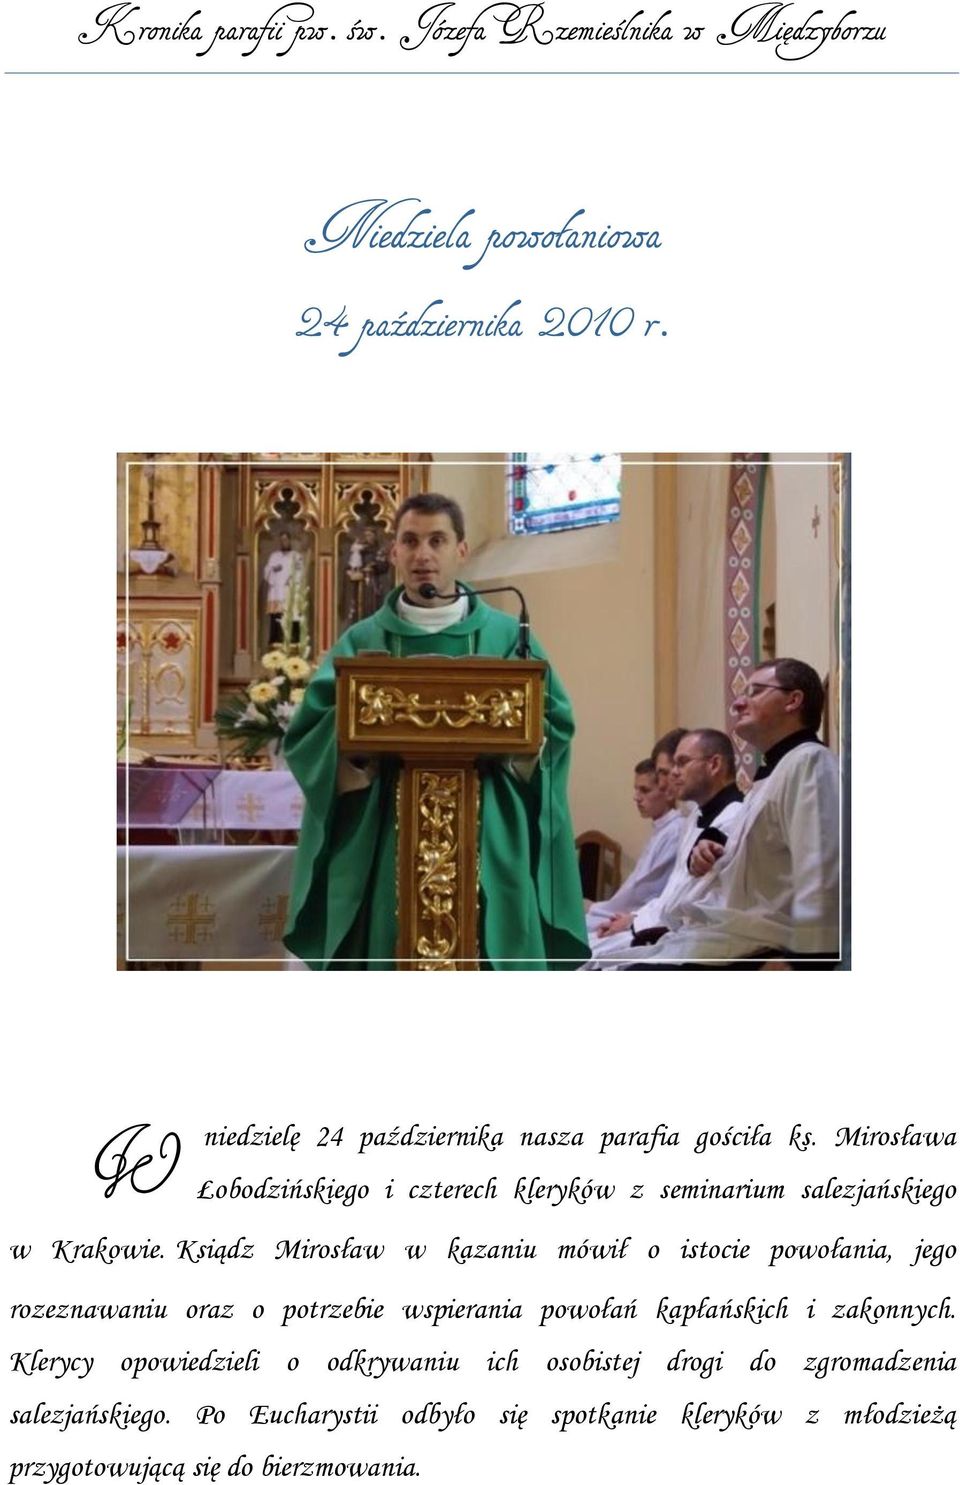 Ksiądz Mirosław w kazaniu mówił o istocie powołania, jego rozeznawaniu oraz o potrzebie wspierania powołań kapłańskich i